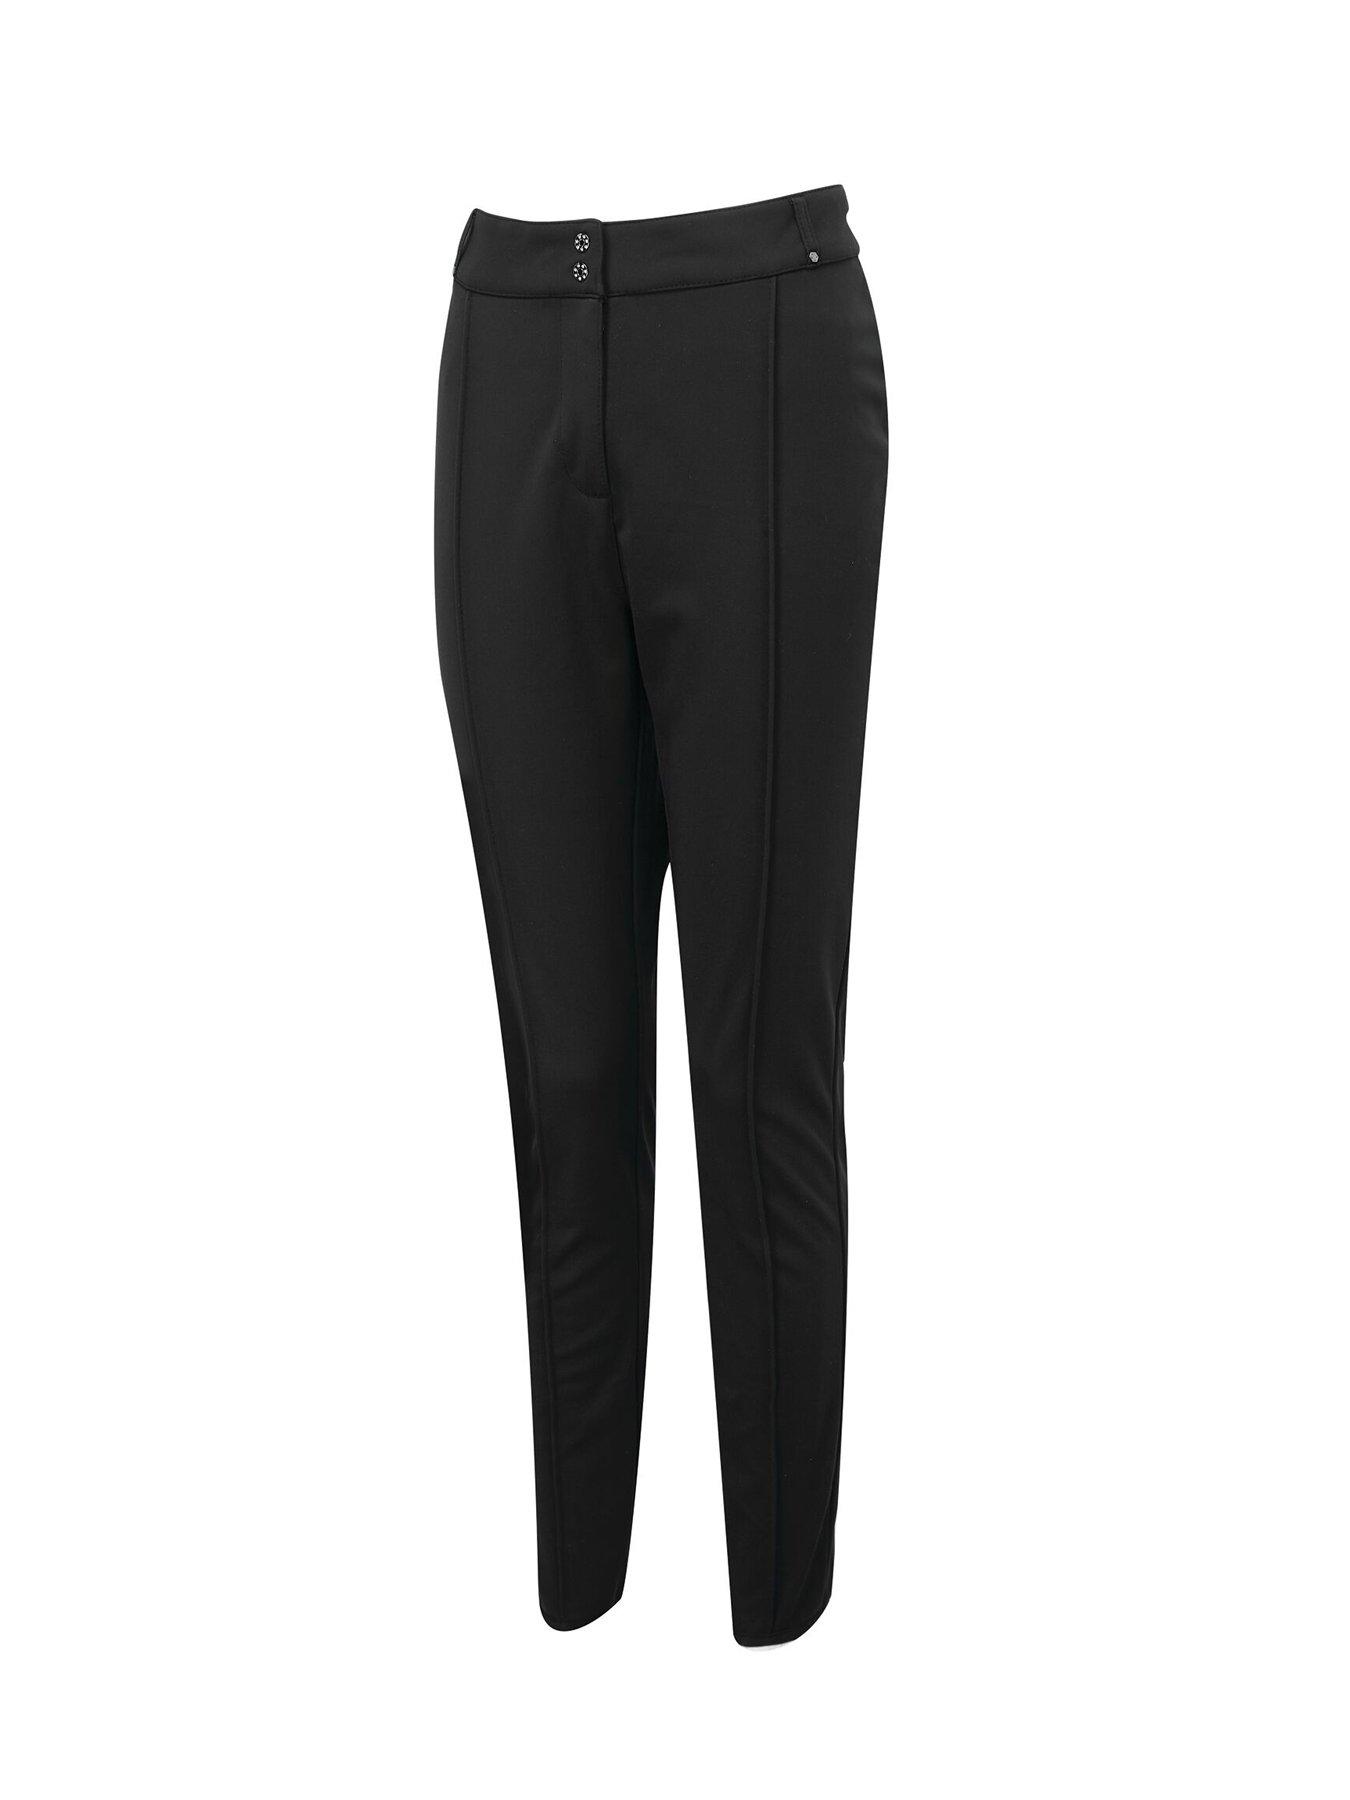 Sleek Full Length Waterproof Ski Pants - Black